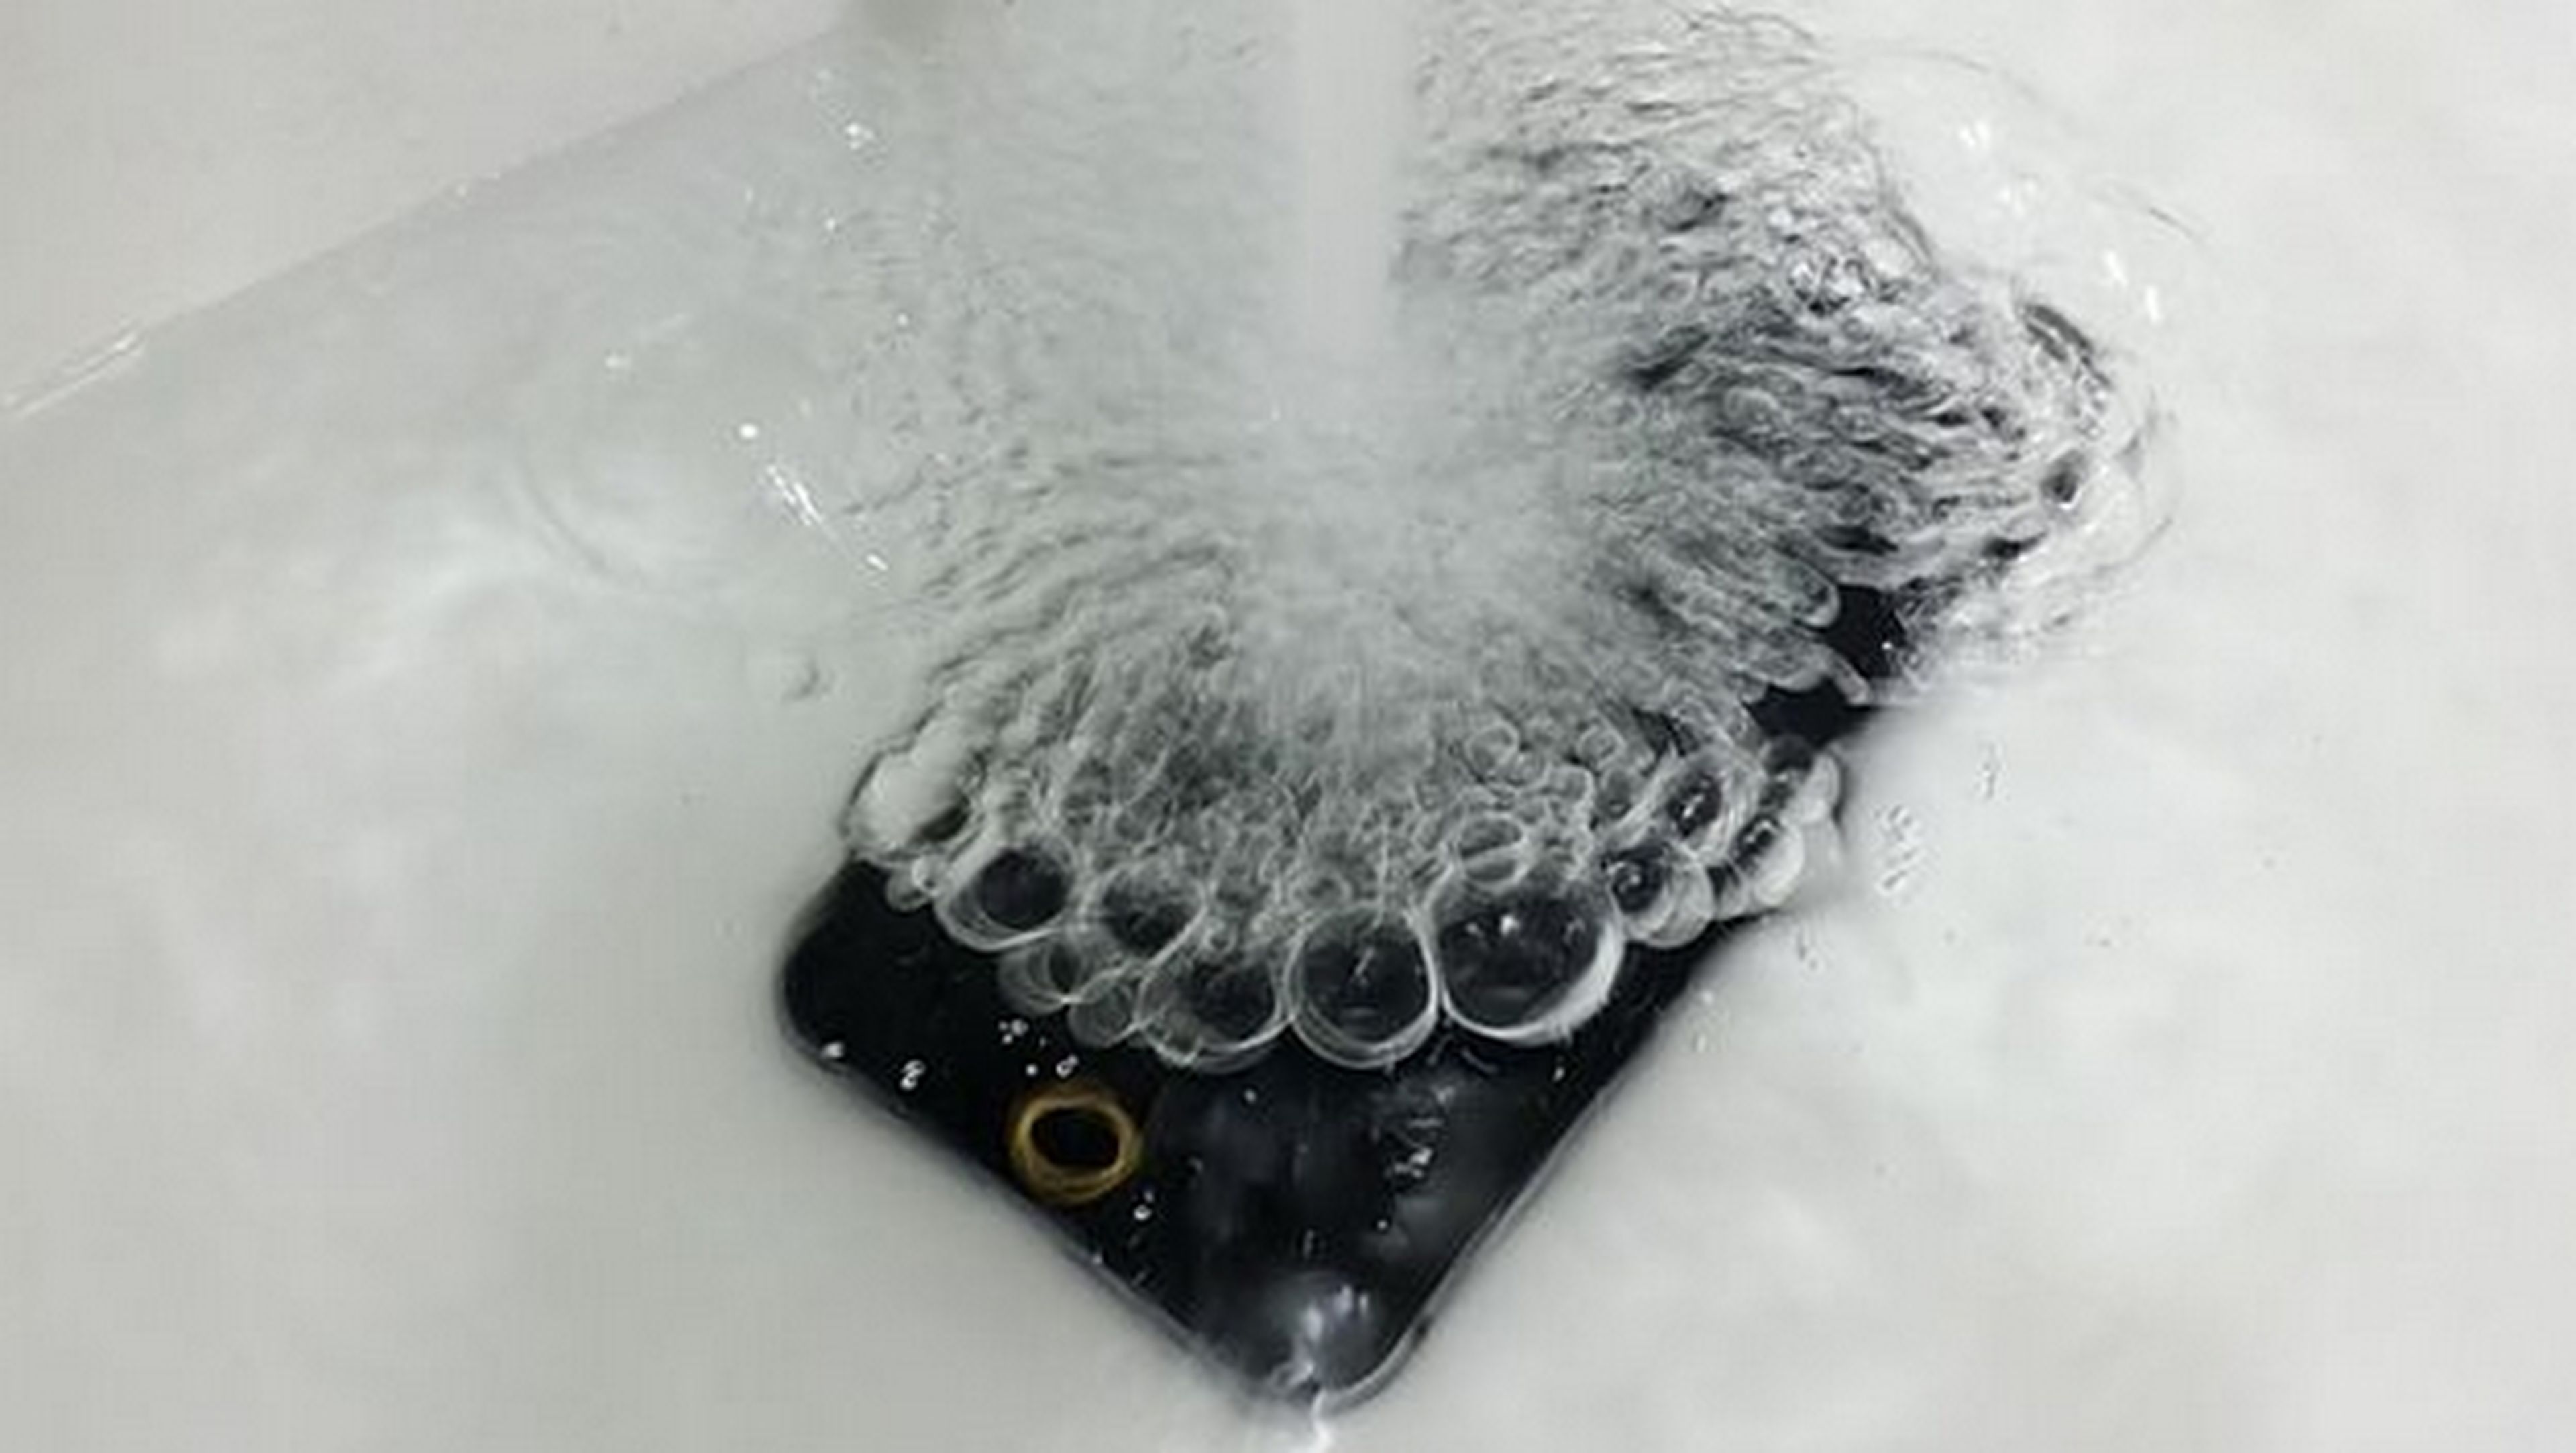 Se filtran fotos de iPhone 6 resistente al agua, y un render de Foxconn, fabricante del iPhone 6.